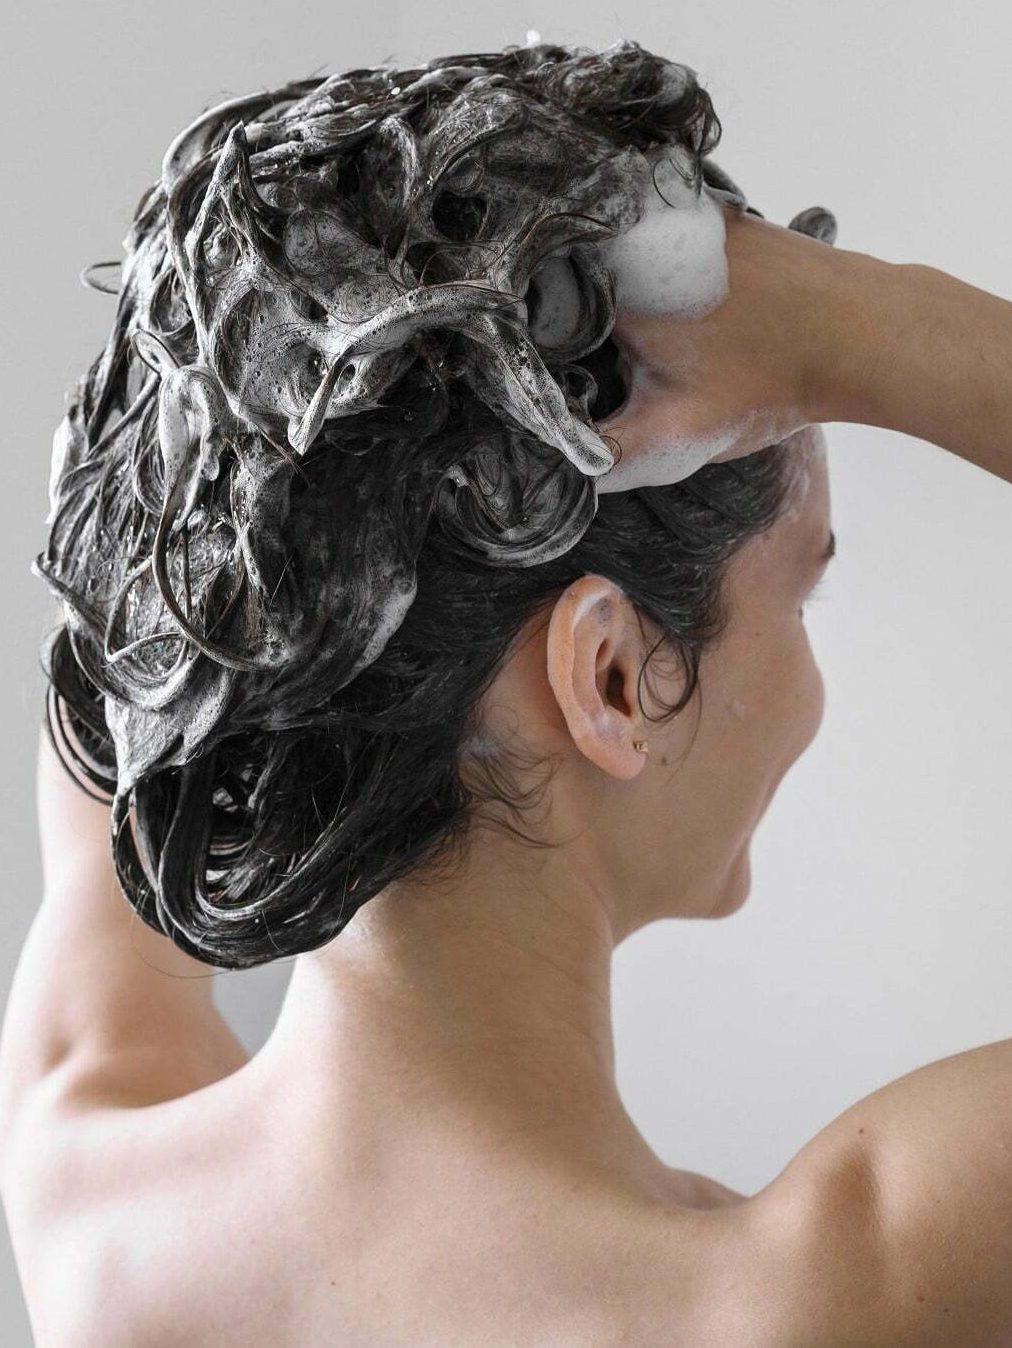 Avoid shampooing your hair